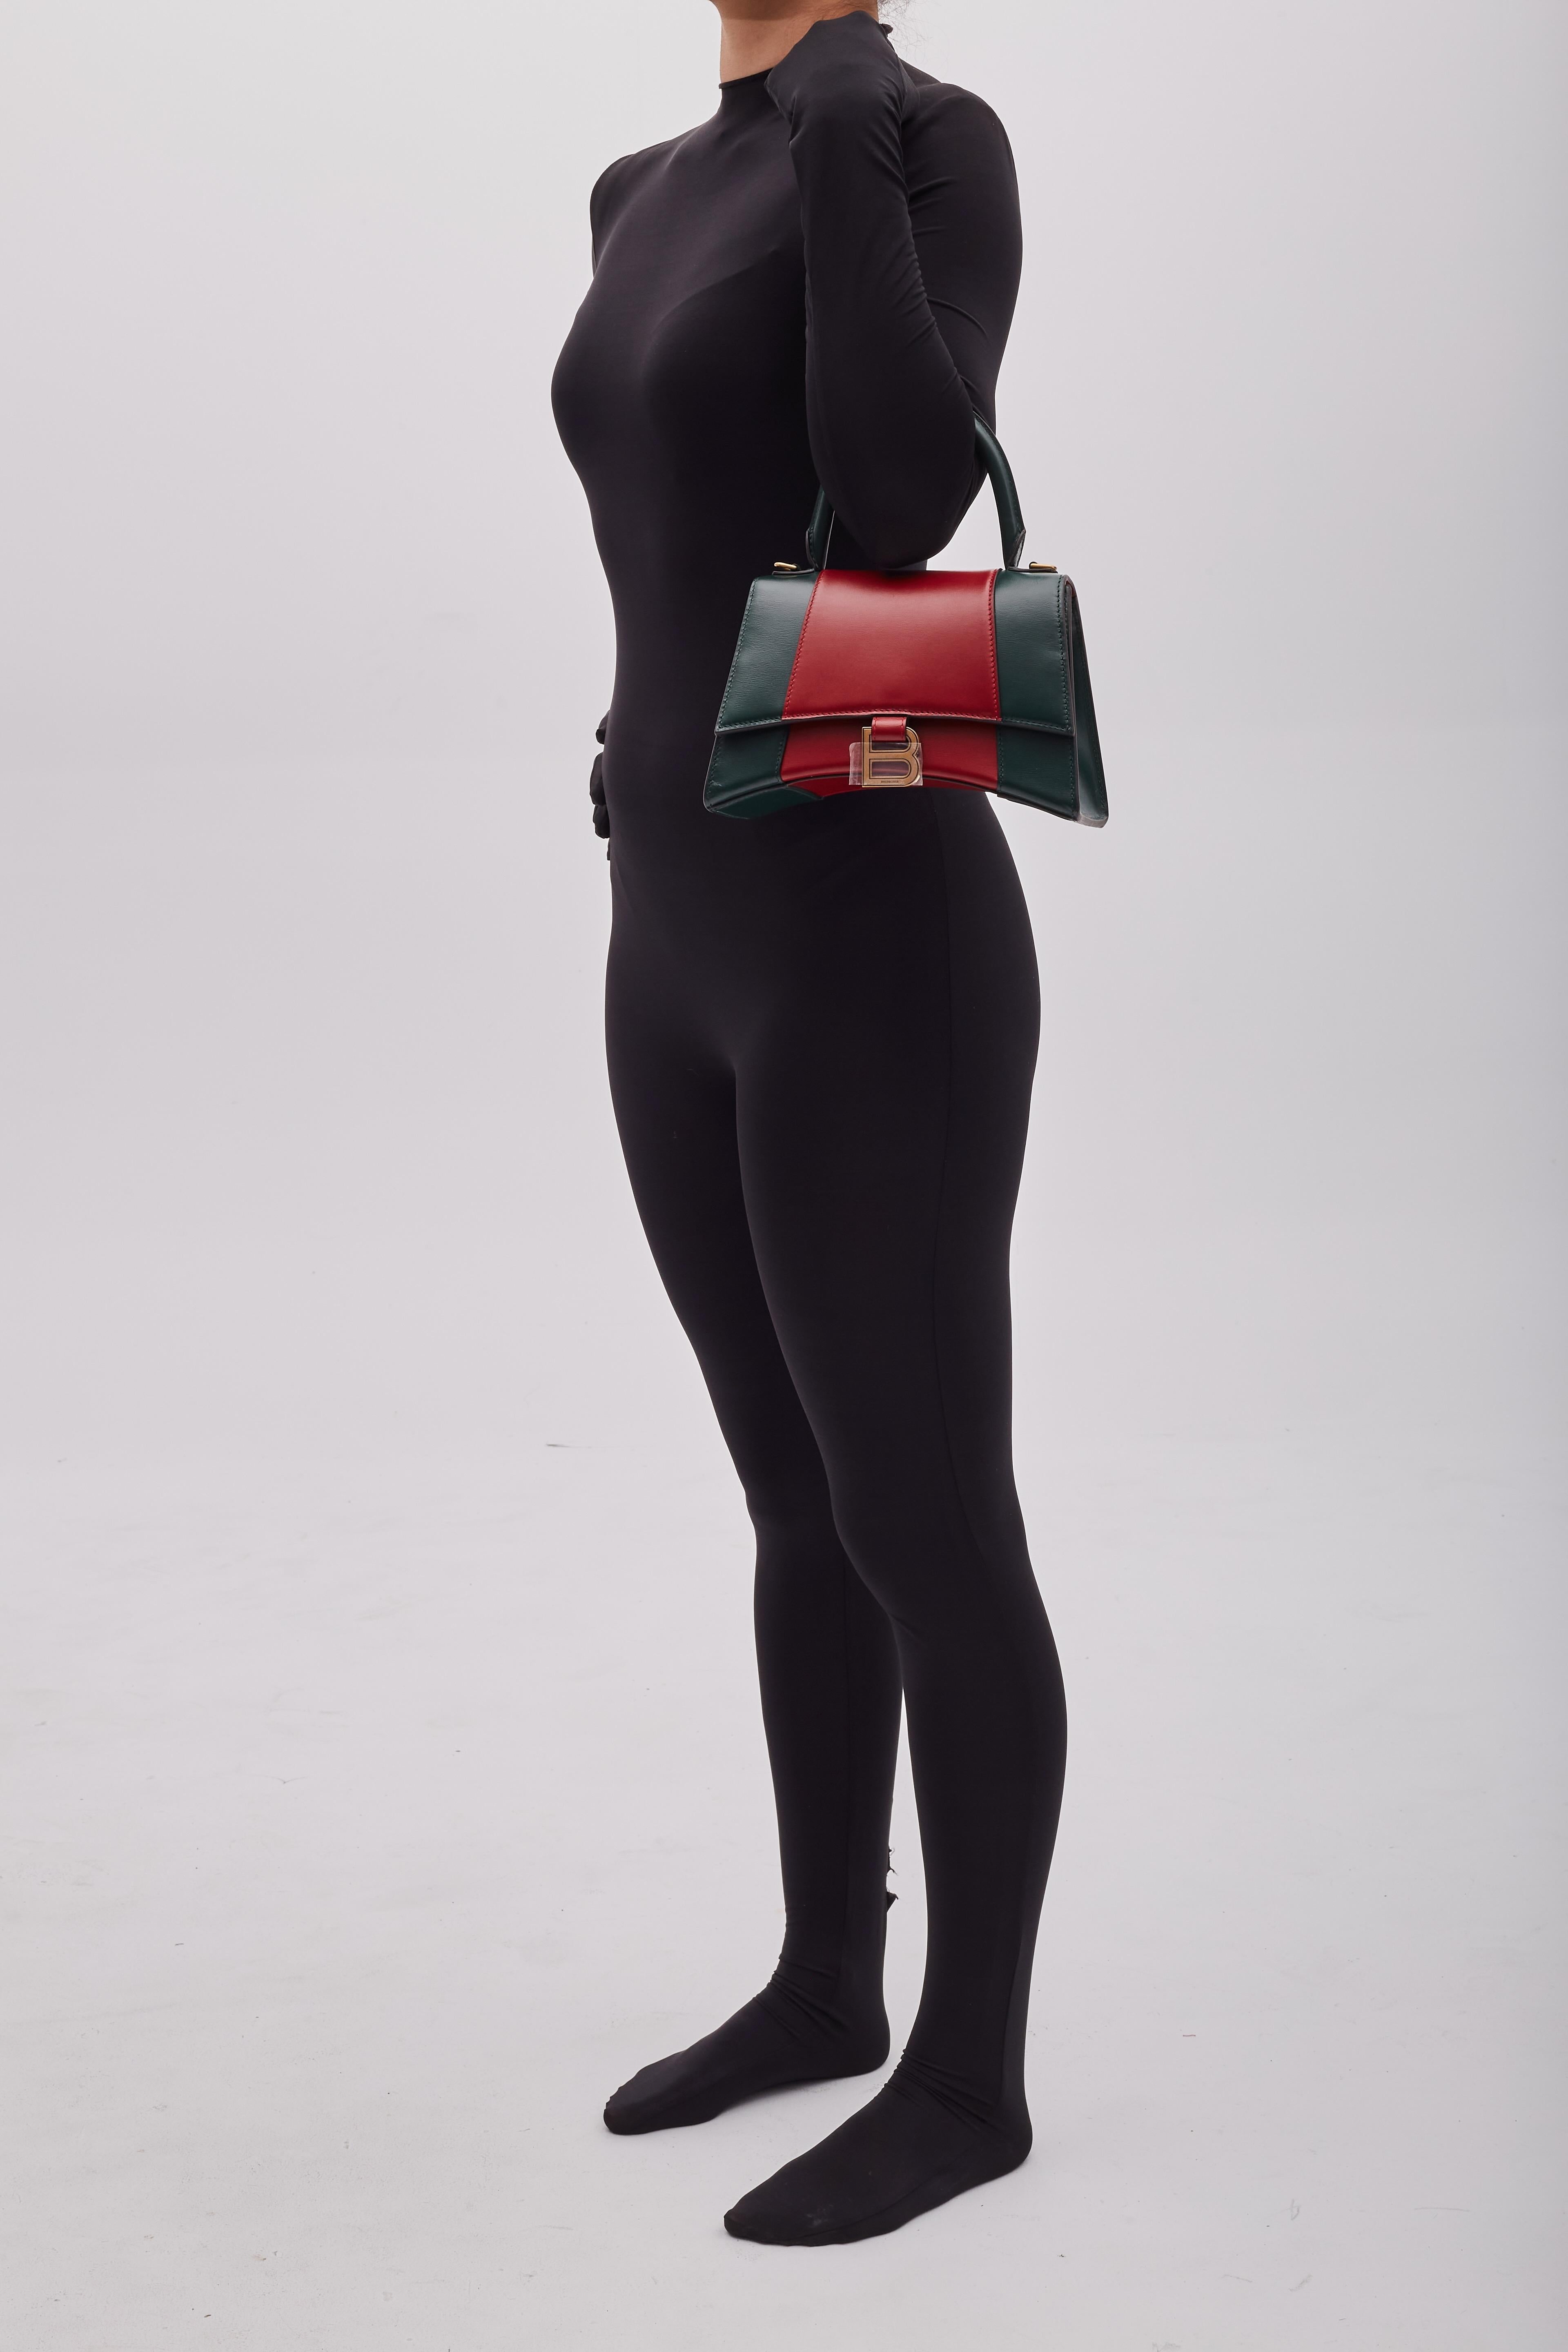 Le projet Hacker. Alessandro Michele dans des expressions d'hommage. Ce sac reprend les silhouettes de Balenciaga avec les couleurs de Gucci dans des créations uniques. Le sac reprend la forme de sablier de Balenciaga dans un coloris classique de la